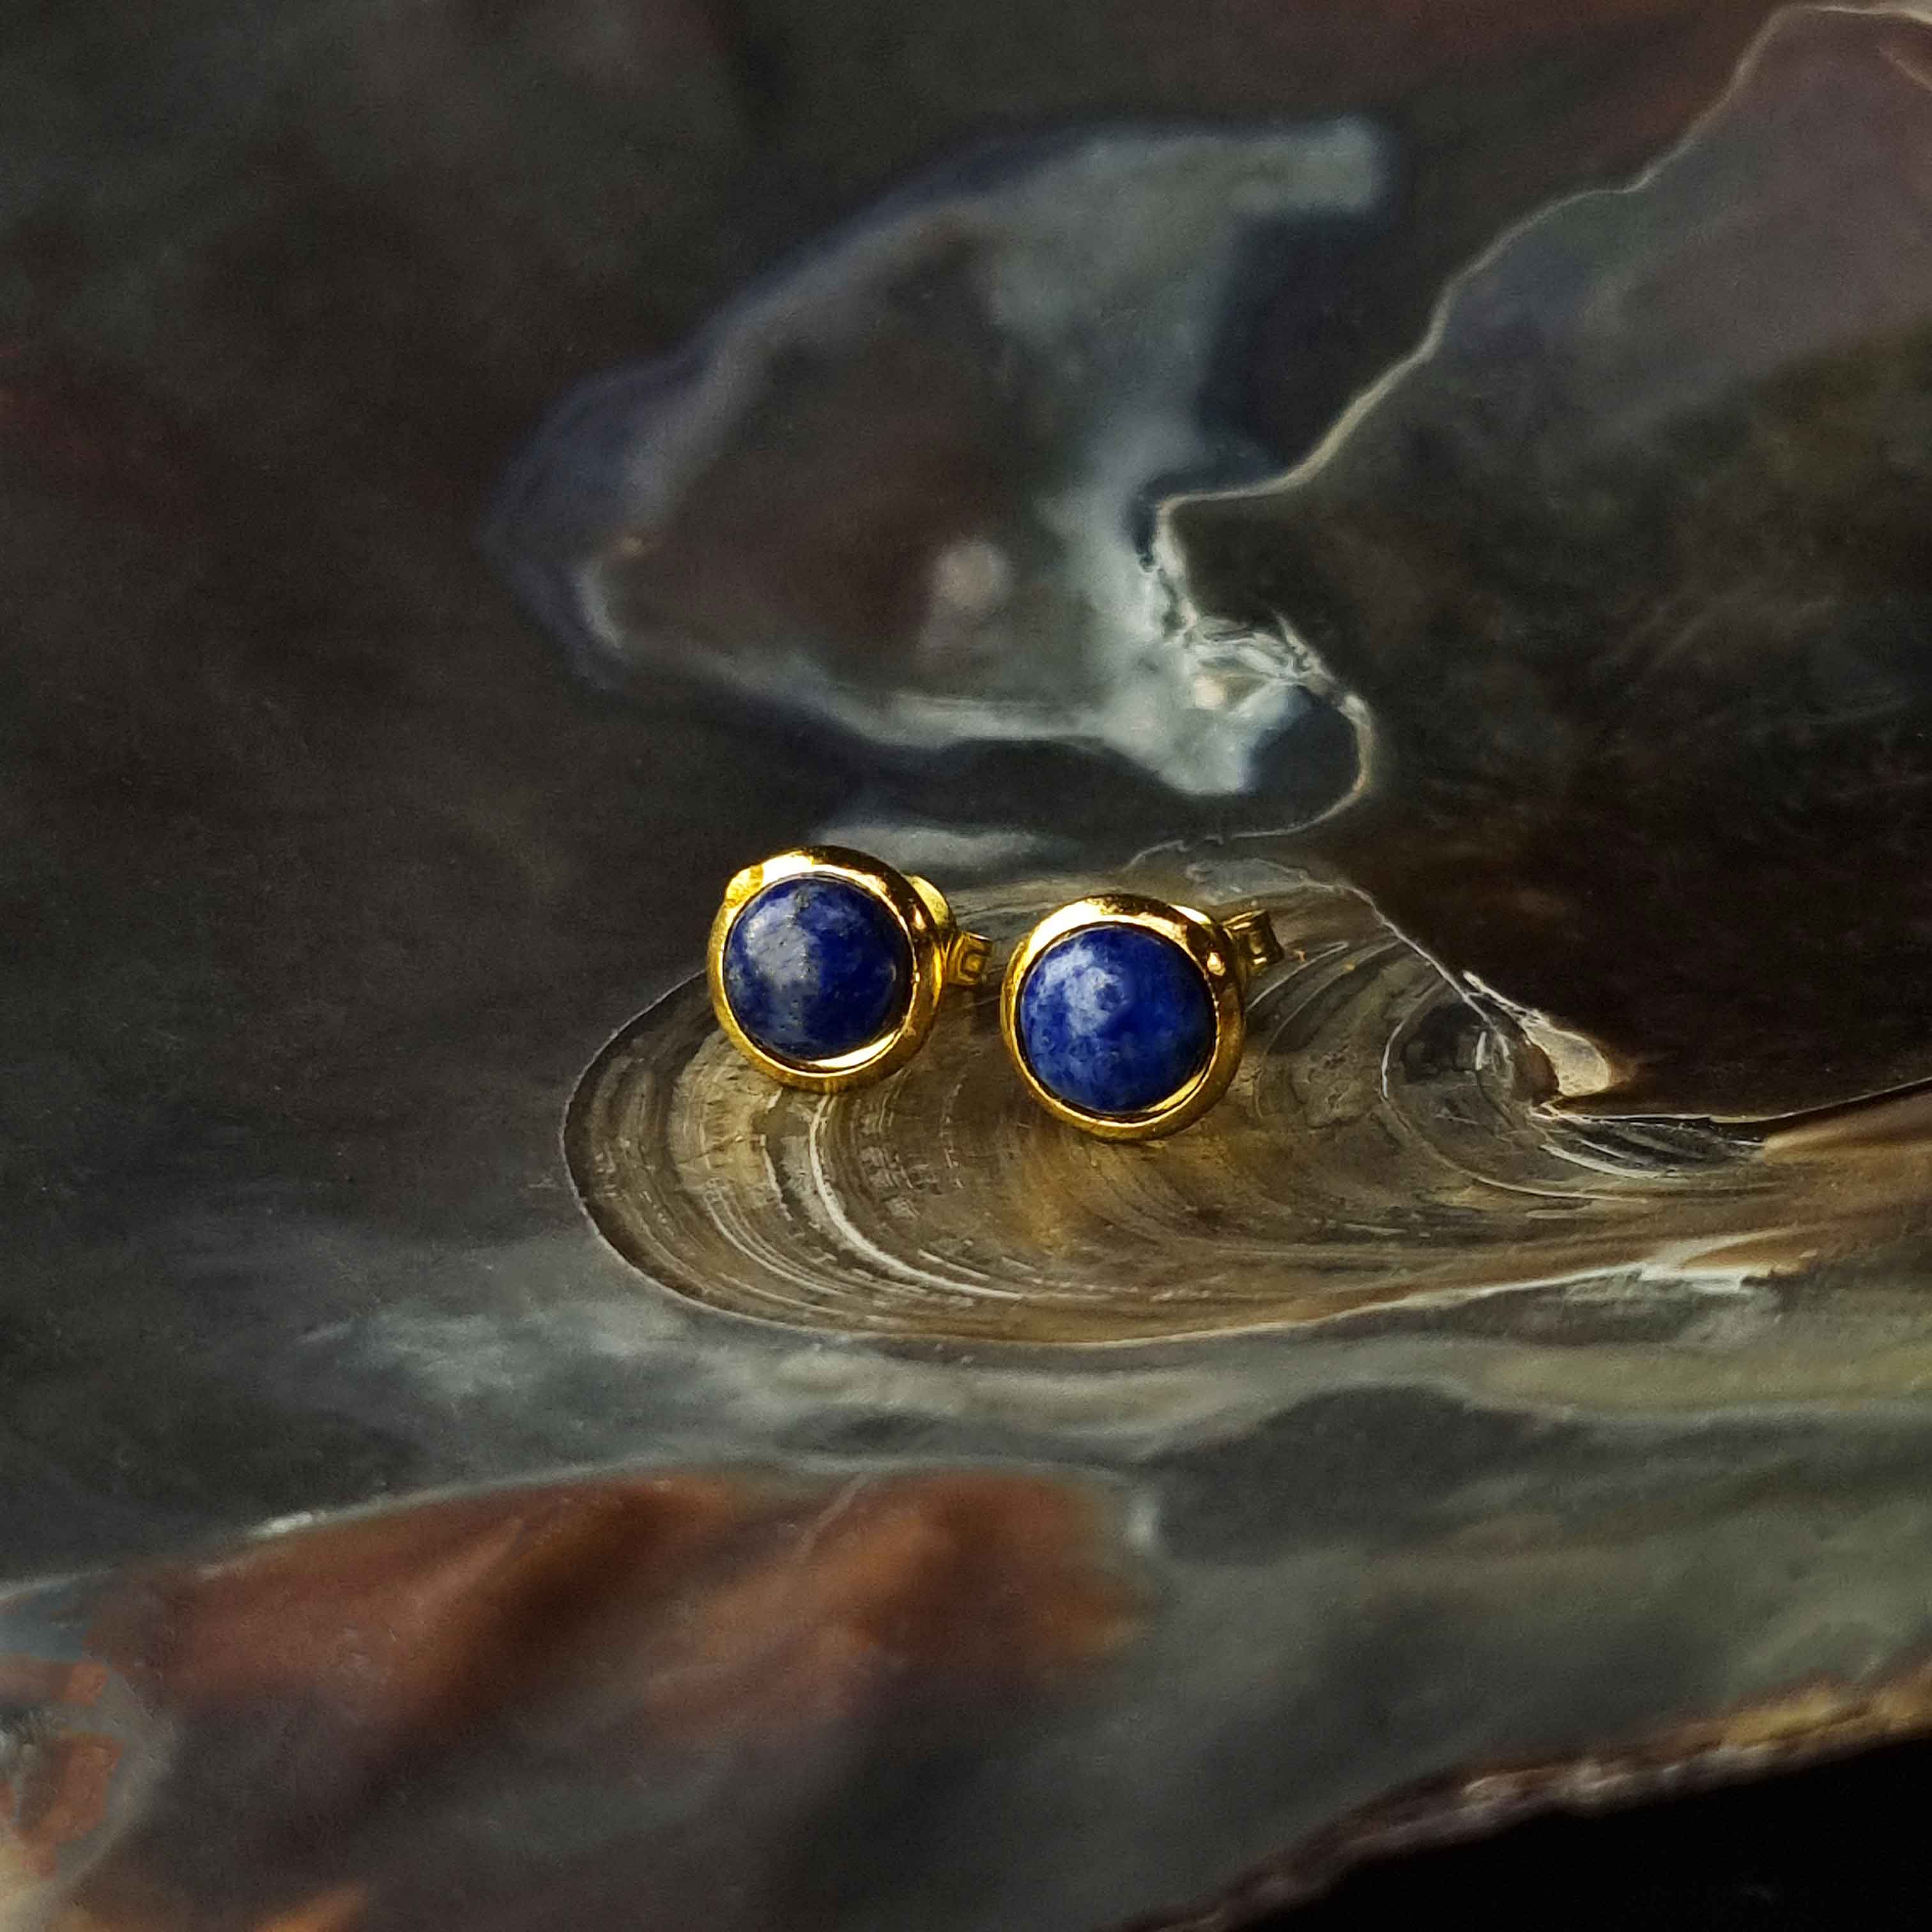 Blauwe edelstenen oorbellen met lapis lazuli, lapis lazuli oorknopjes liggend in schelp, vooraanzicht